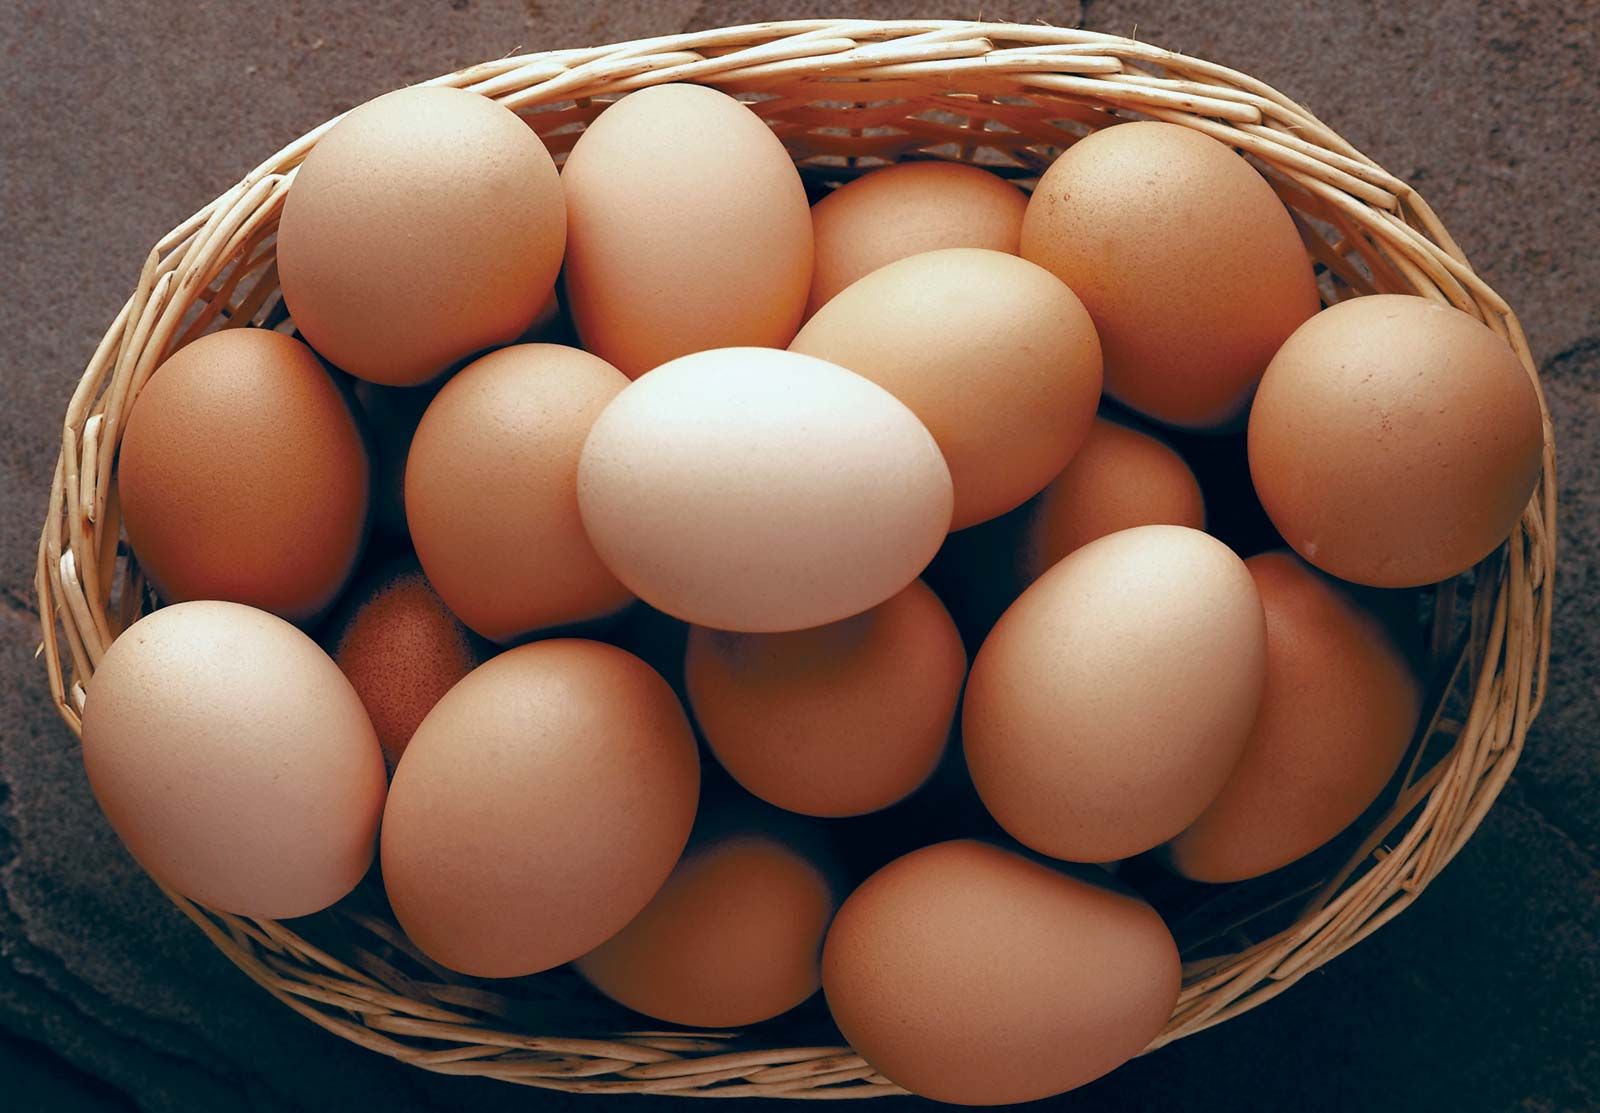 Pictures Of A Eggs - KibrisPDR